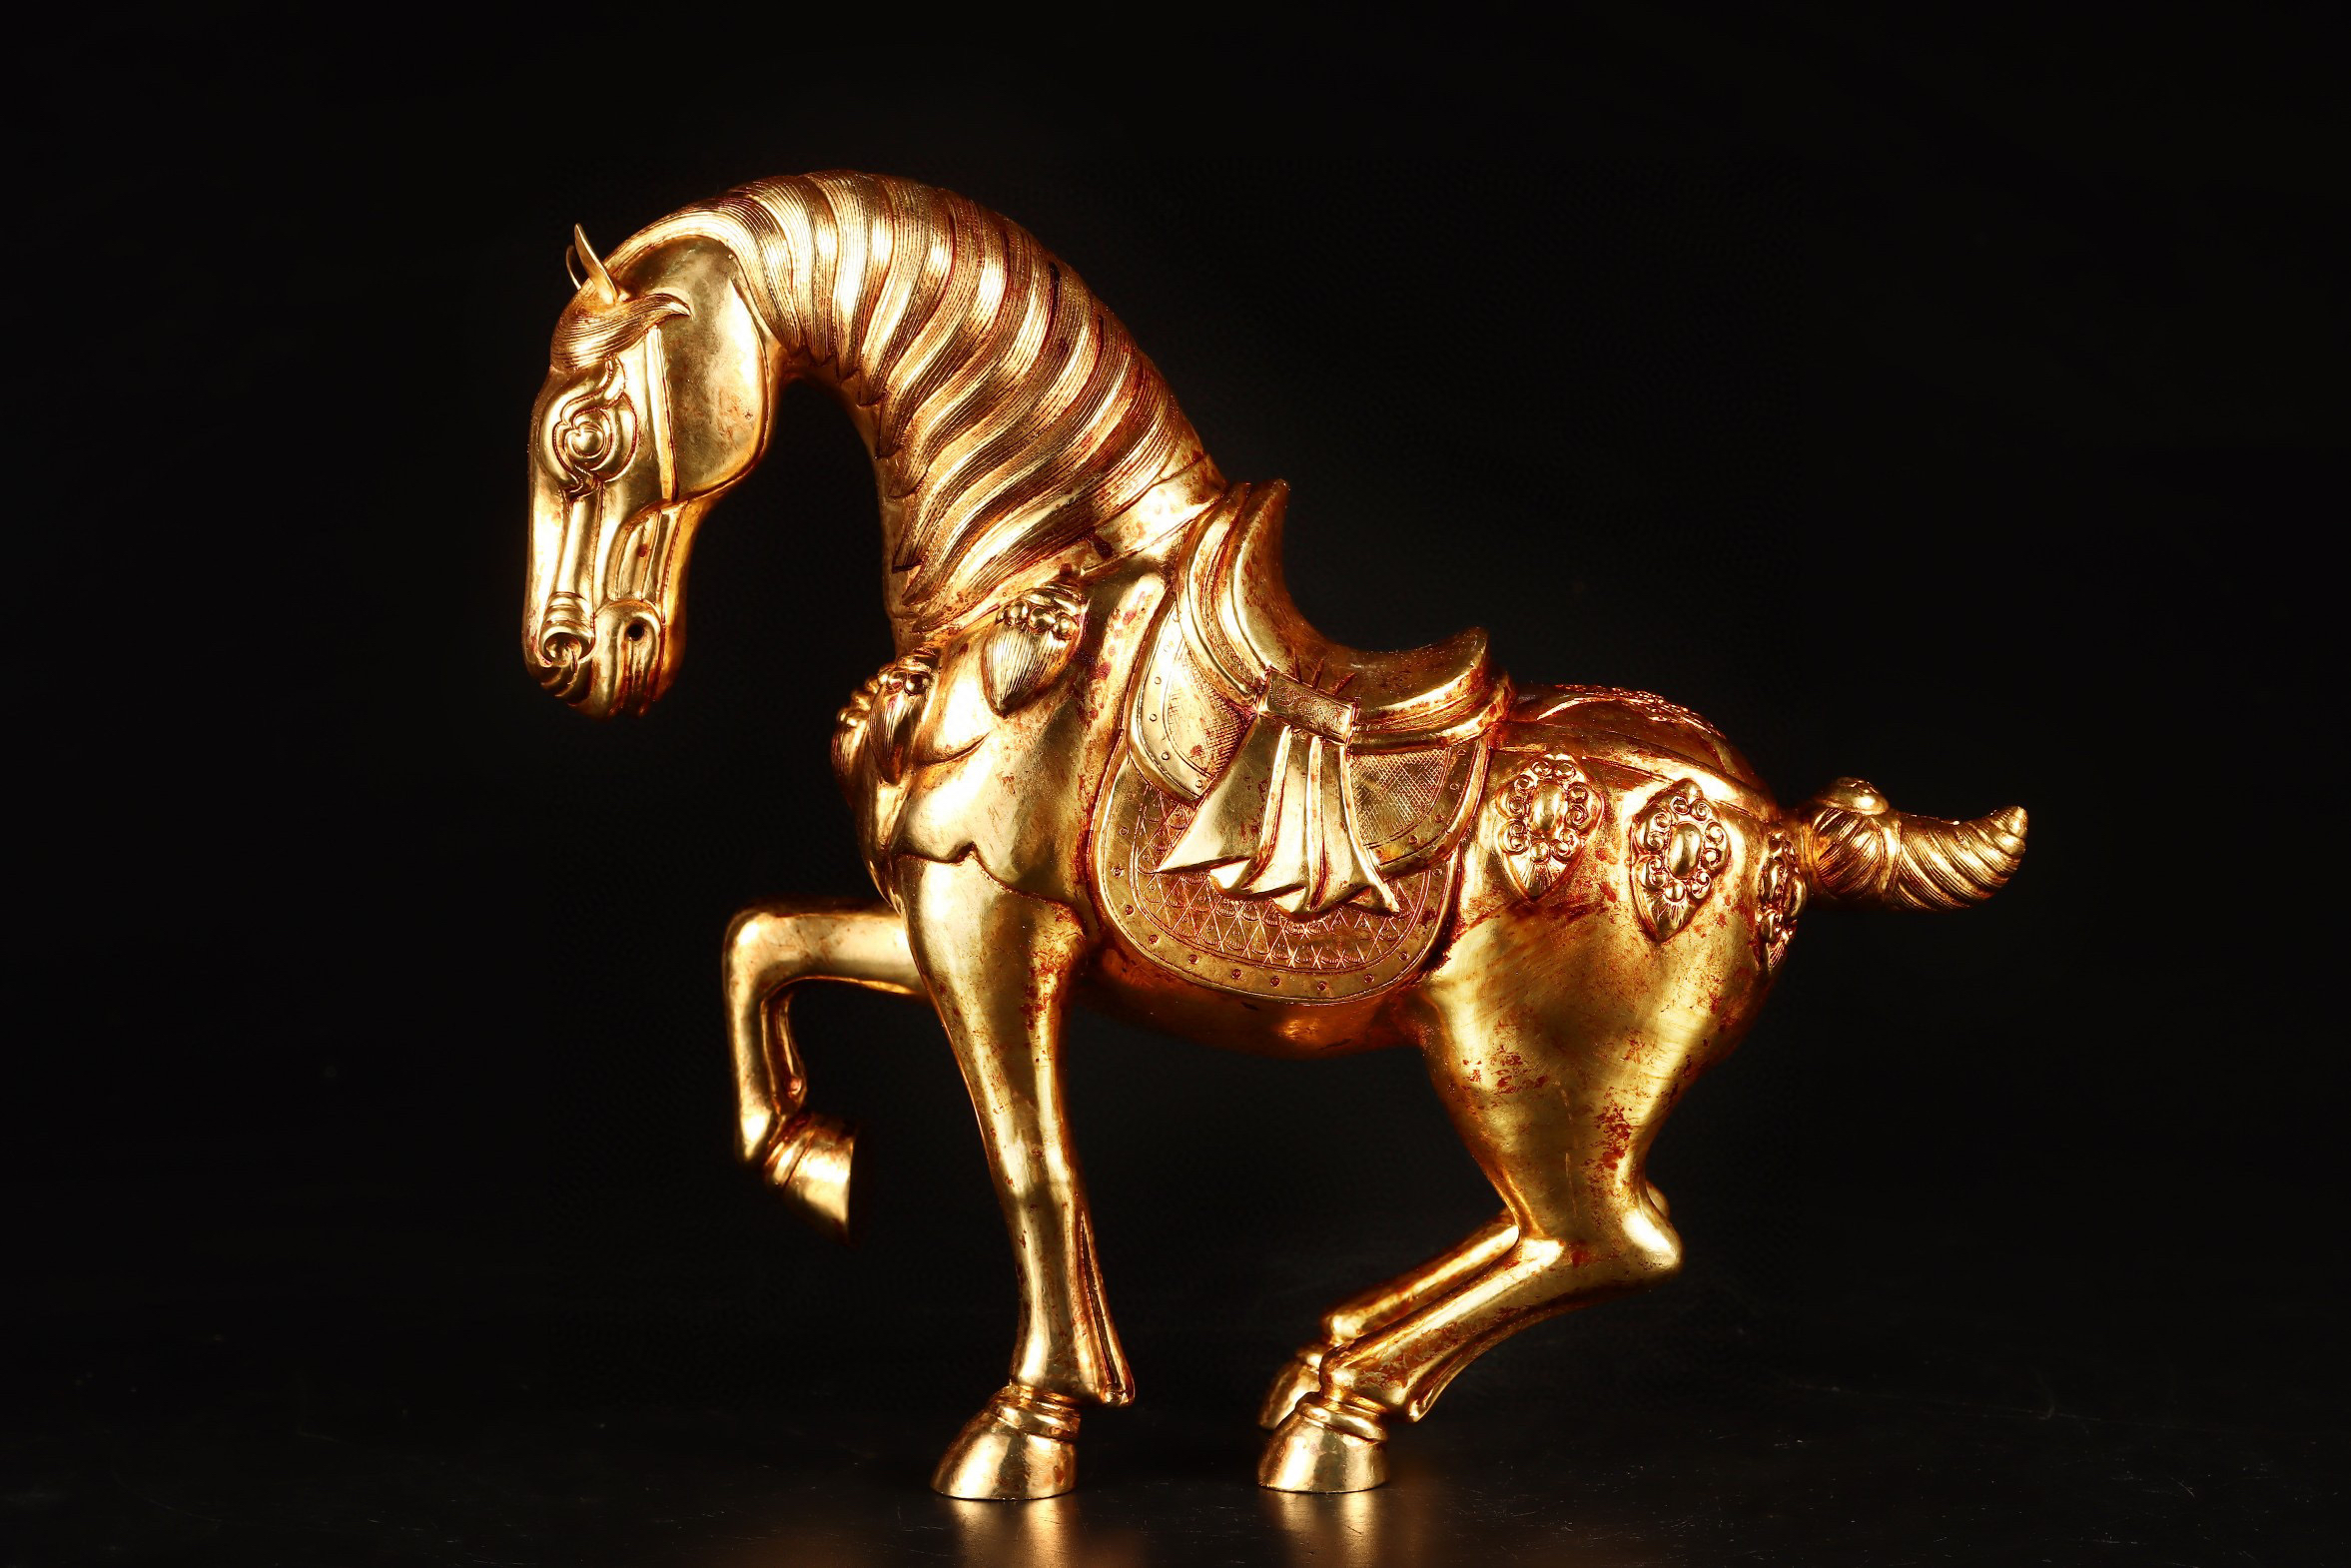 唐代铜鎏金八俊马,纯手工錾刻工艺打造 八骏图中的八匹马分别叫: 1